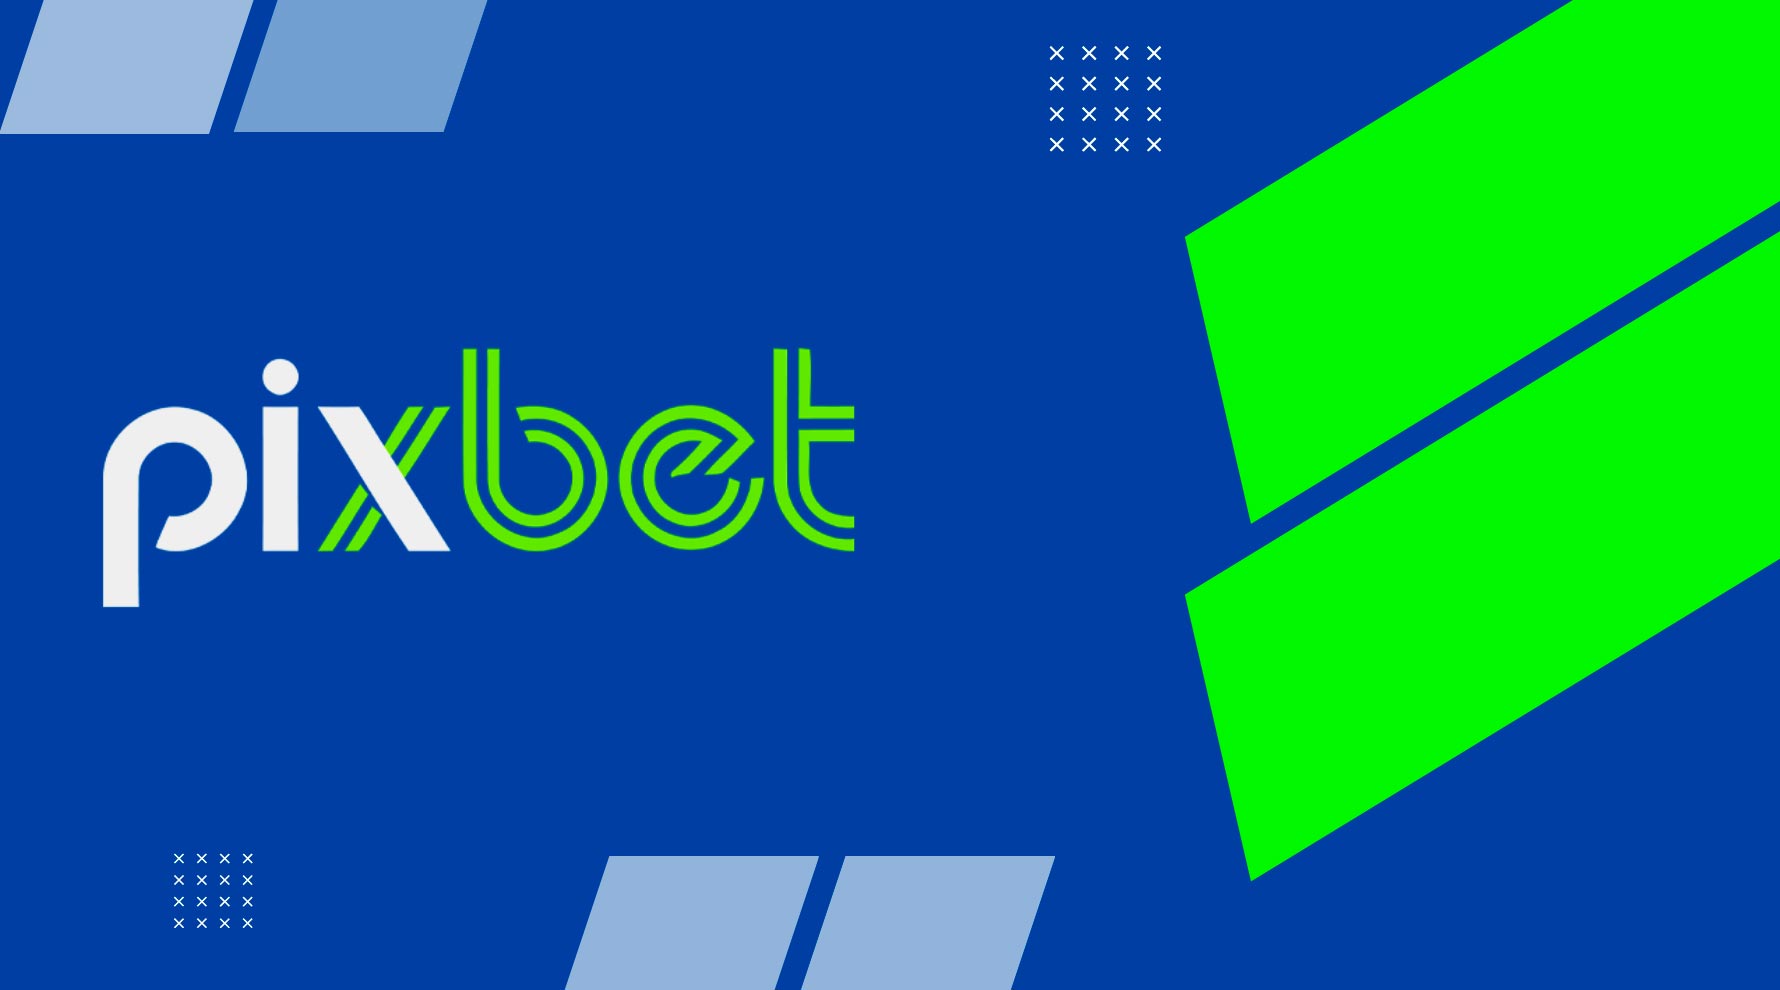 Pixbet é confiável? Análise da casa de apostas brasileira